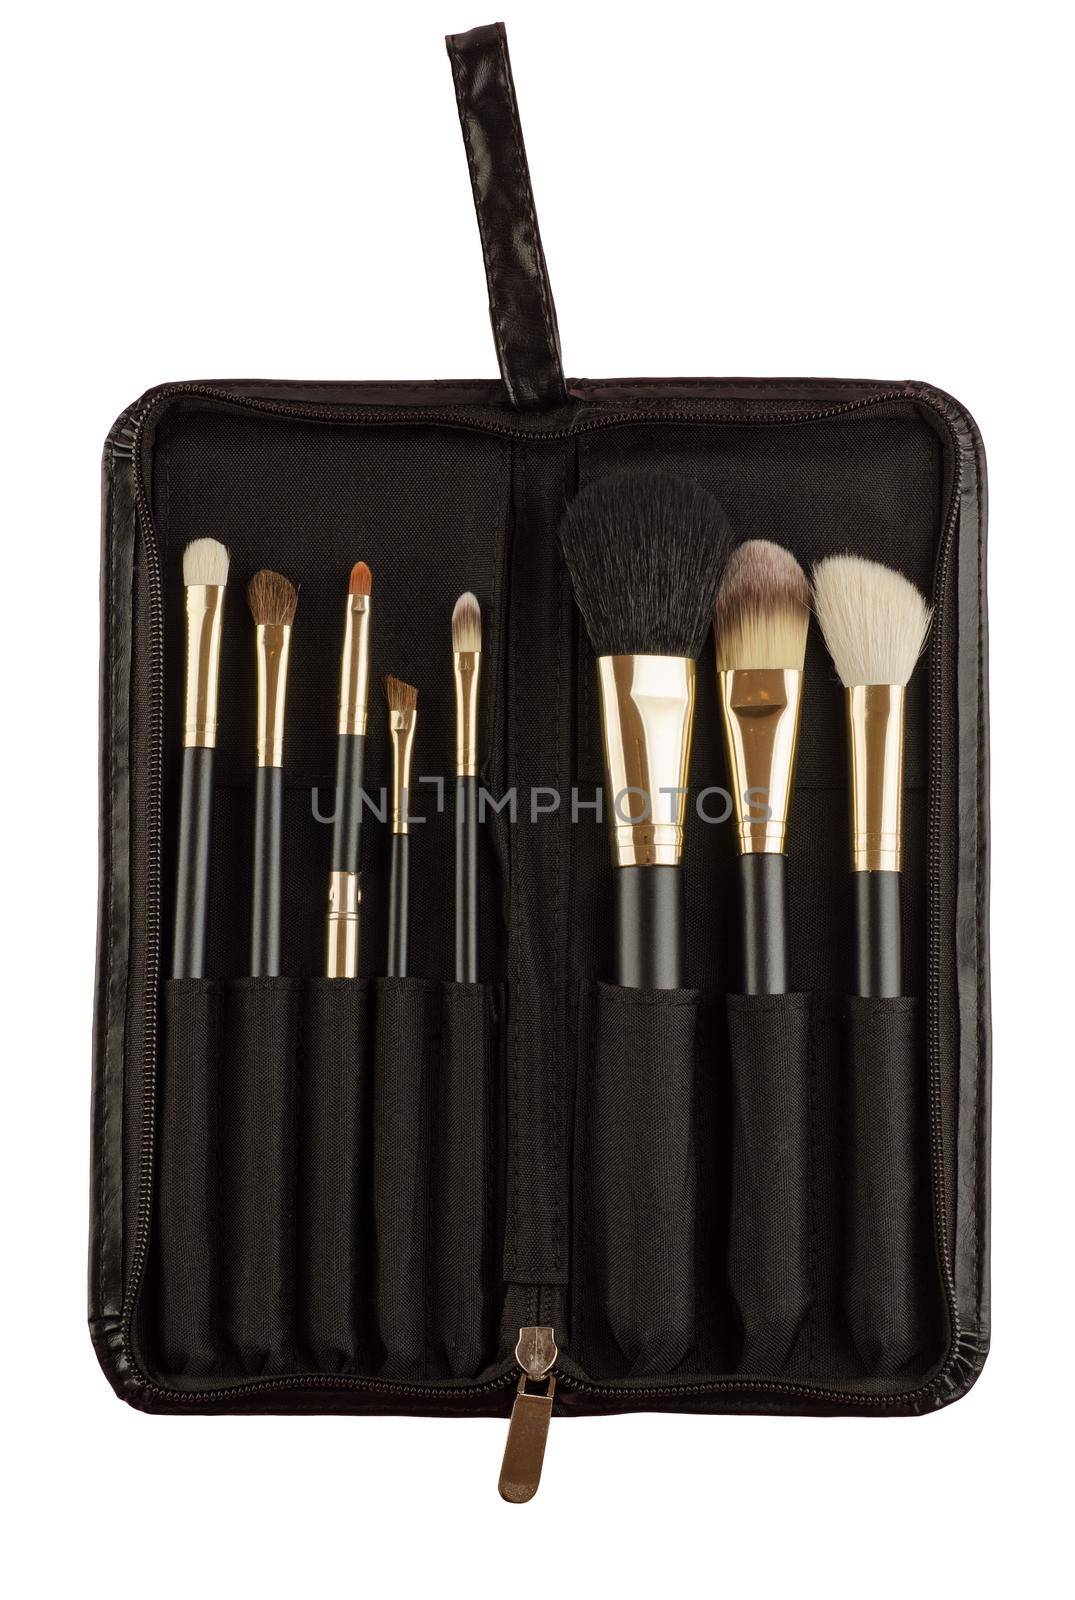 Set of black makeup brushes in case